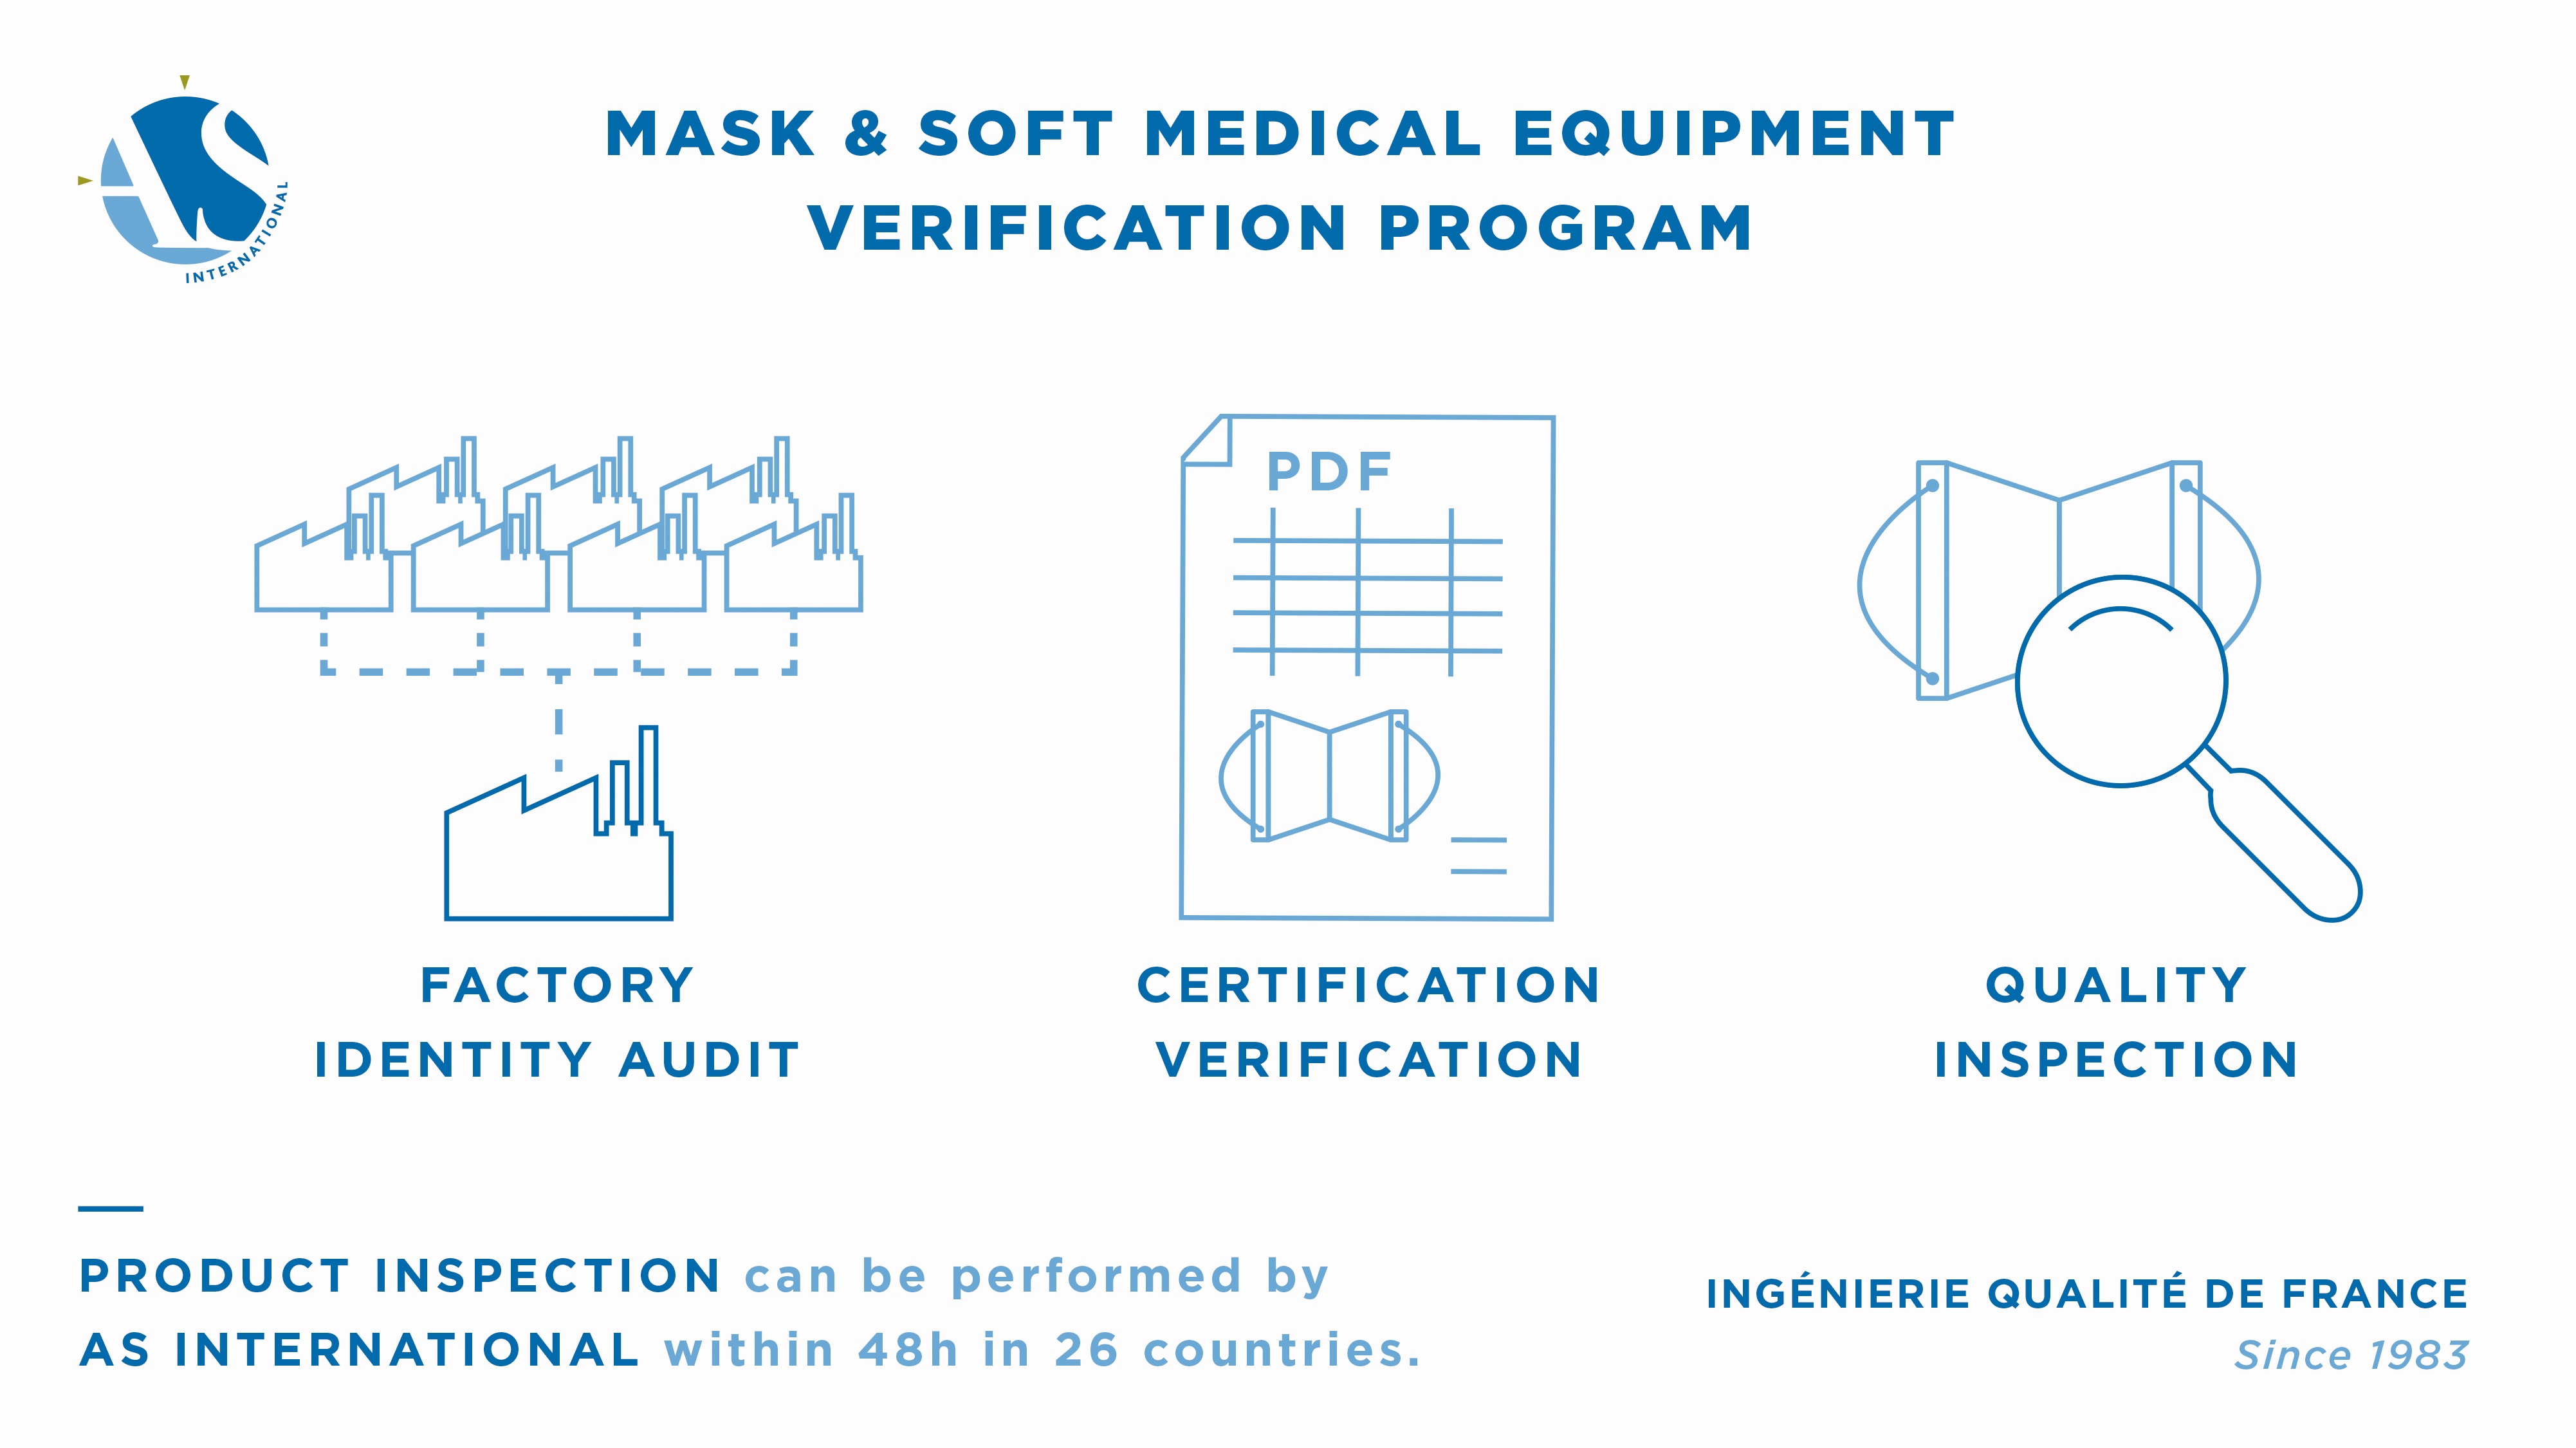 [Solution] Mask & Soft Medical Verification Program